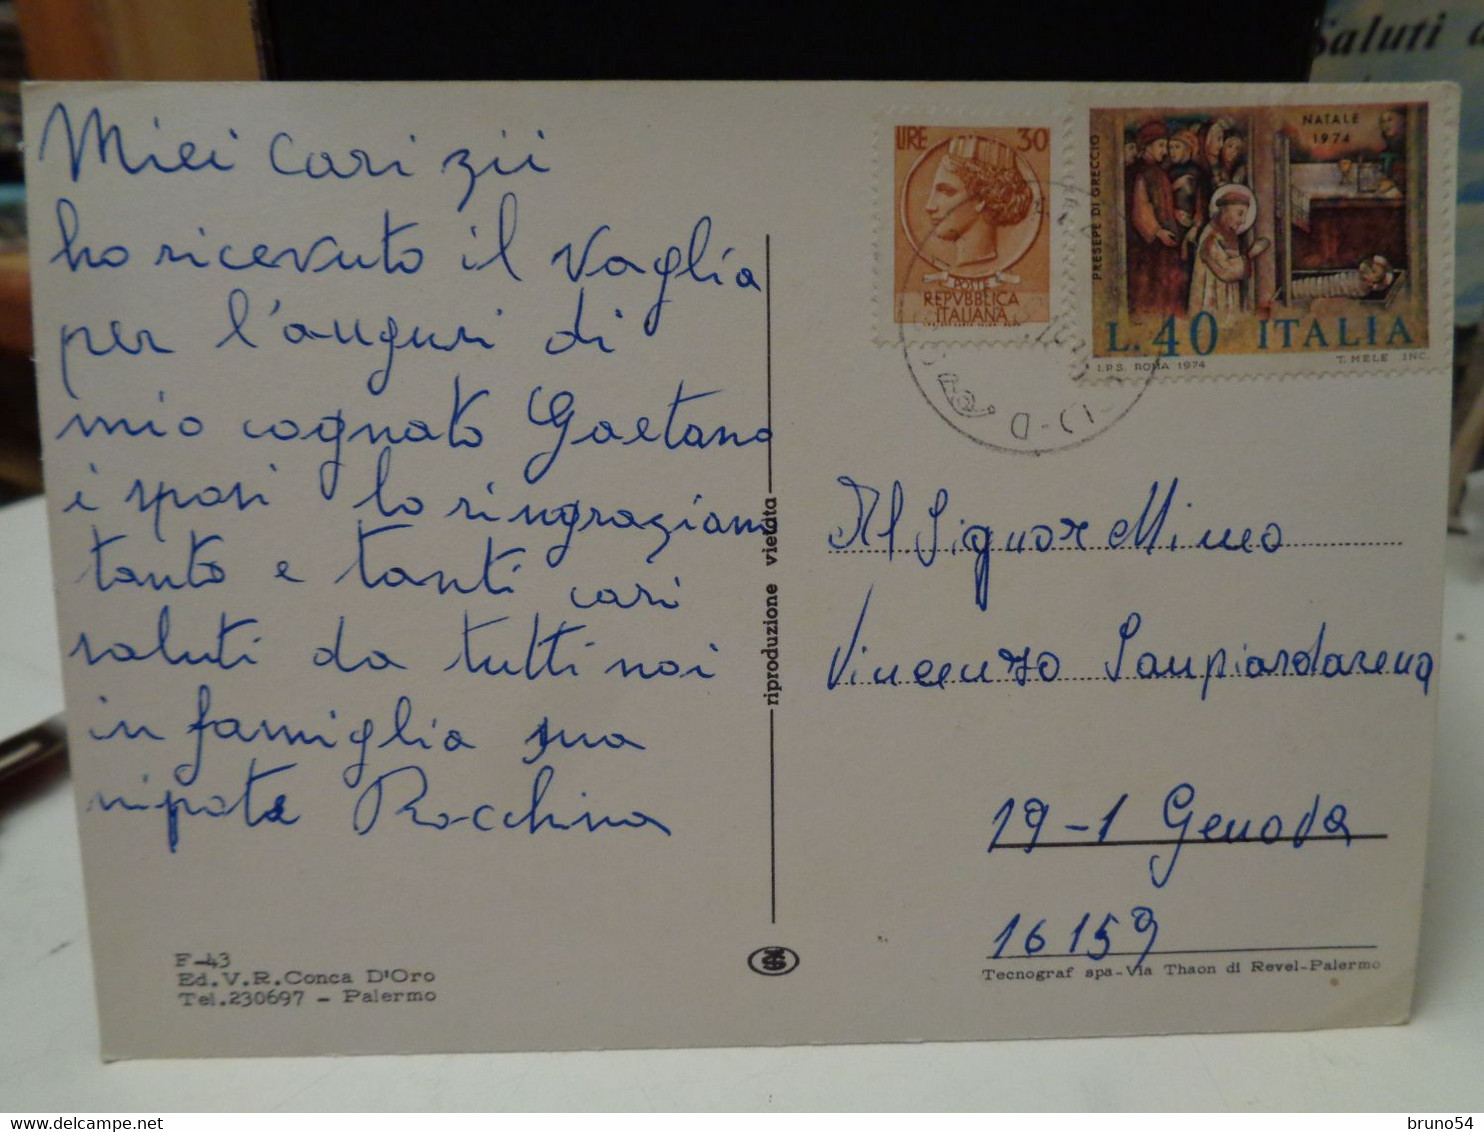 Cartolina Saluti Da Mazzarino Prov Caltanissetta , Distributore Di Benzina, Centro, Castello ,anni 70 - Caltanissetta